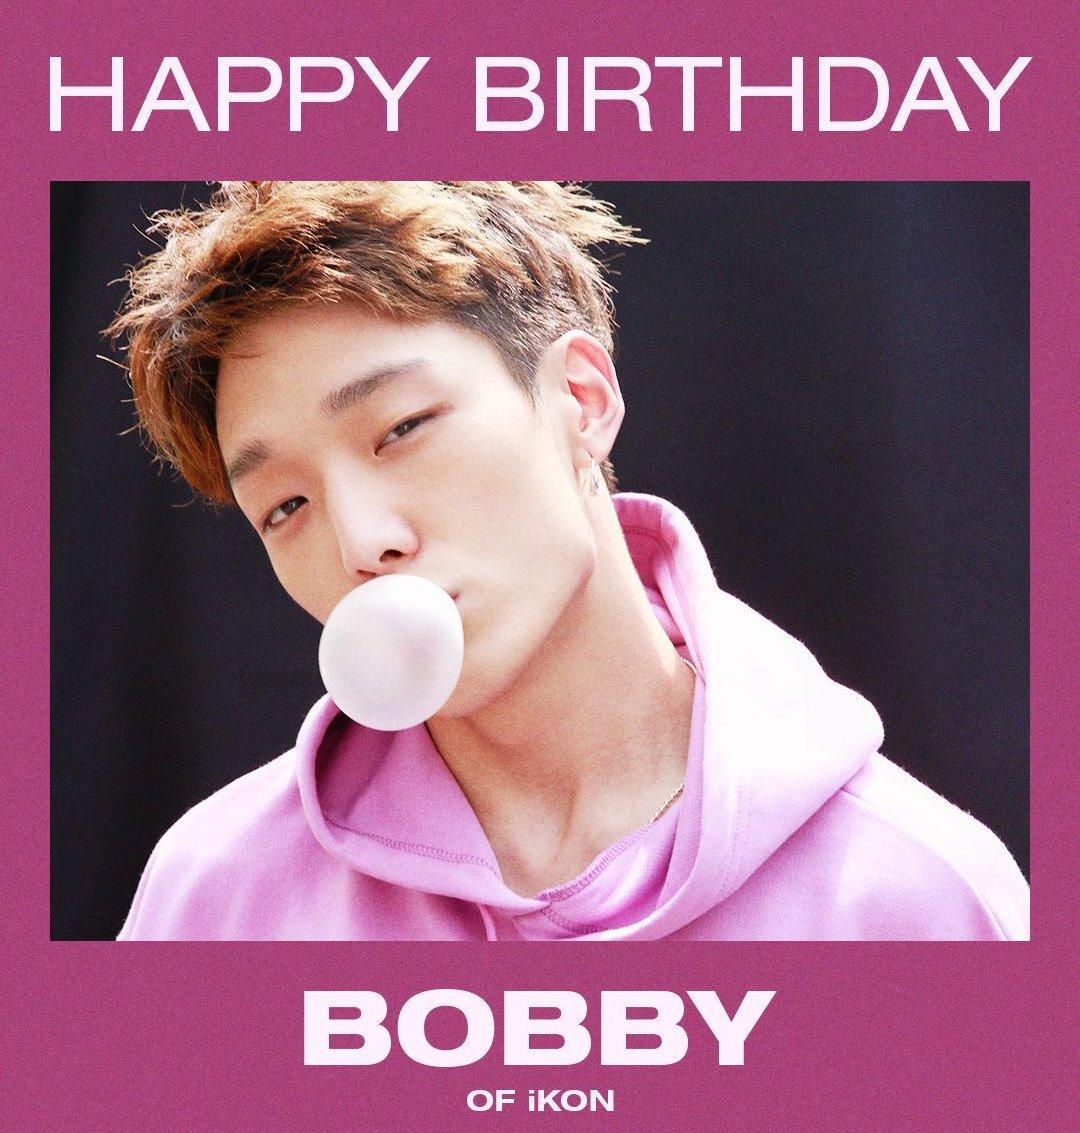 Бобби (iKON) празднует свой день рождения